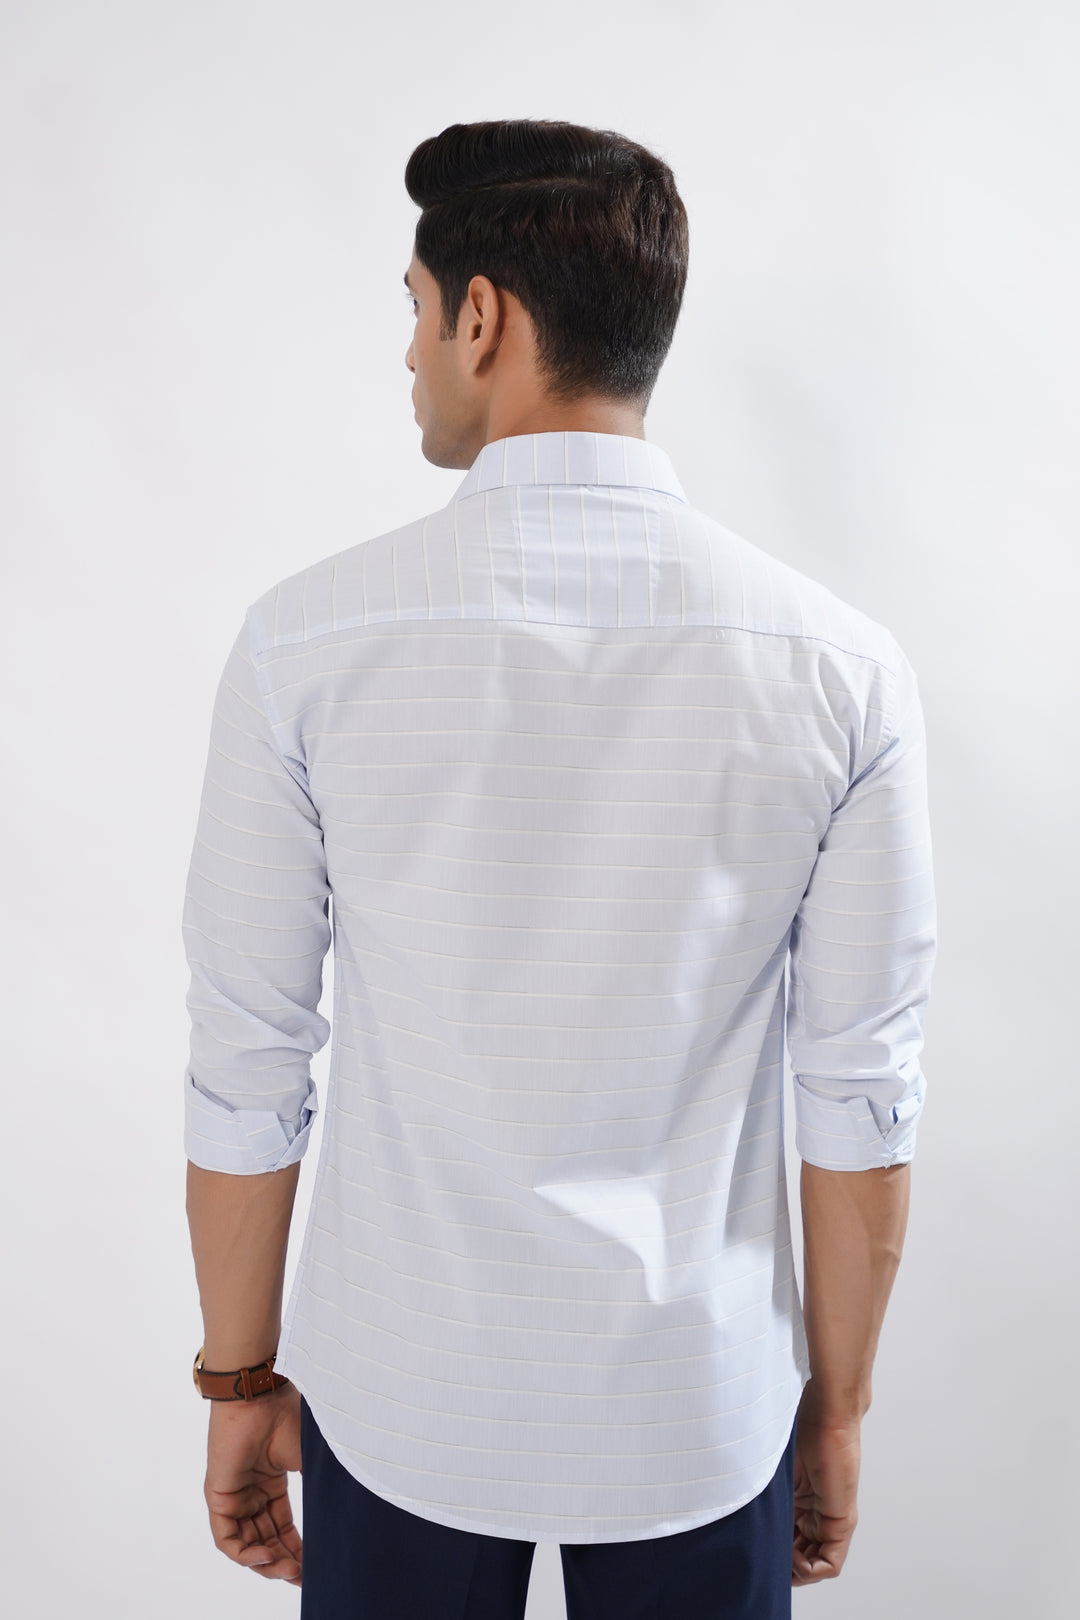 Cordate Blue Super Soft Cotton Premium Plaid Shirt